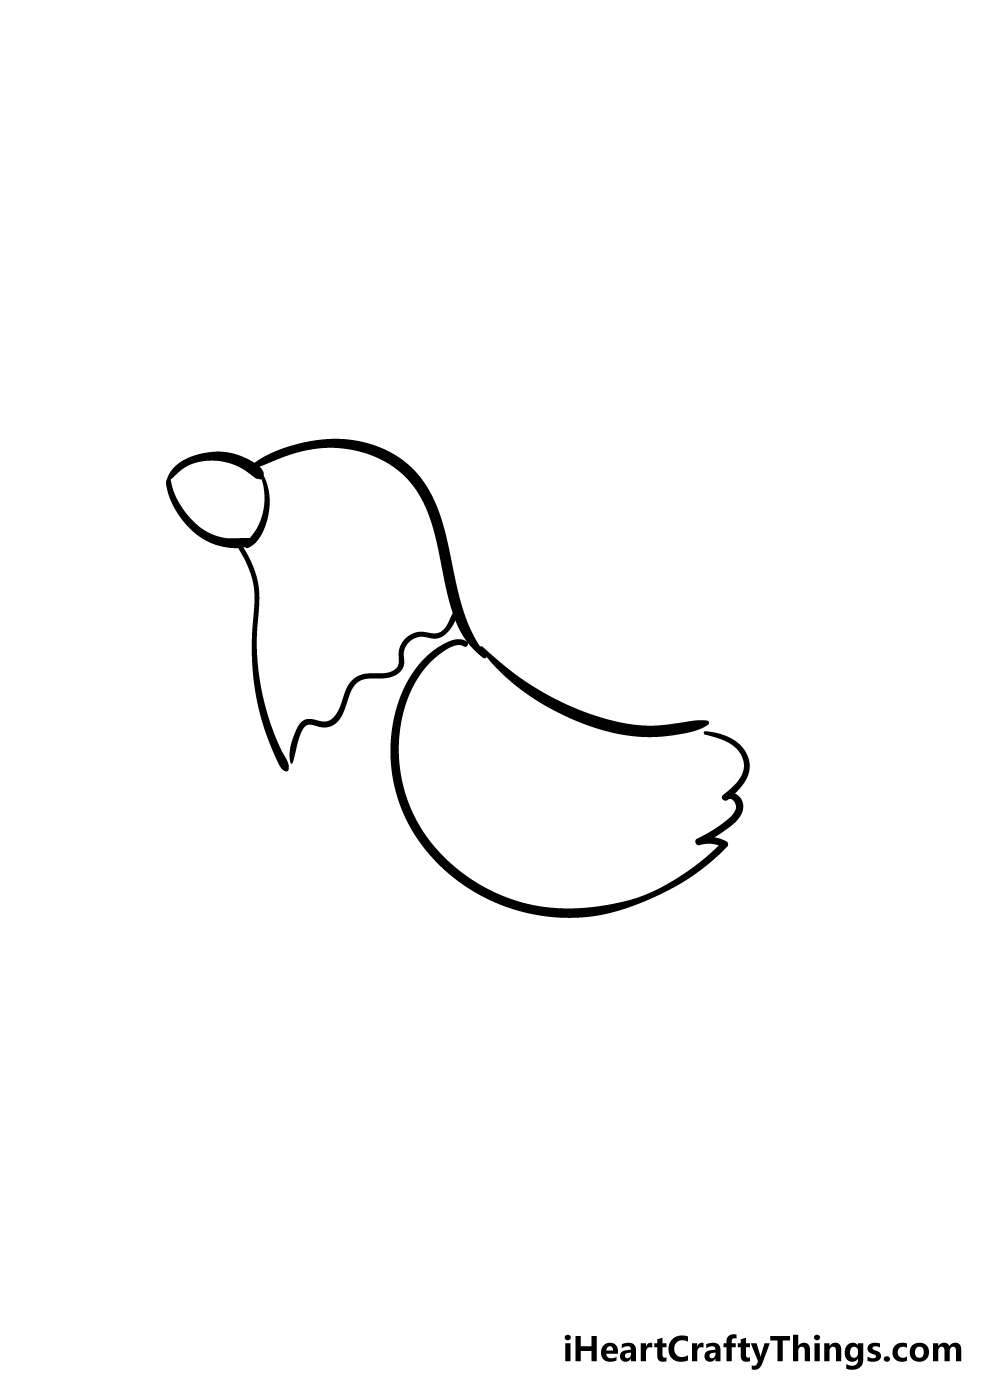 Chicken3 - Cách vẽ con gà đơn giản đẹp với 8 bước cơ bản hướng dẫn chi tiết